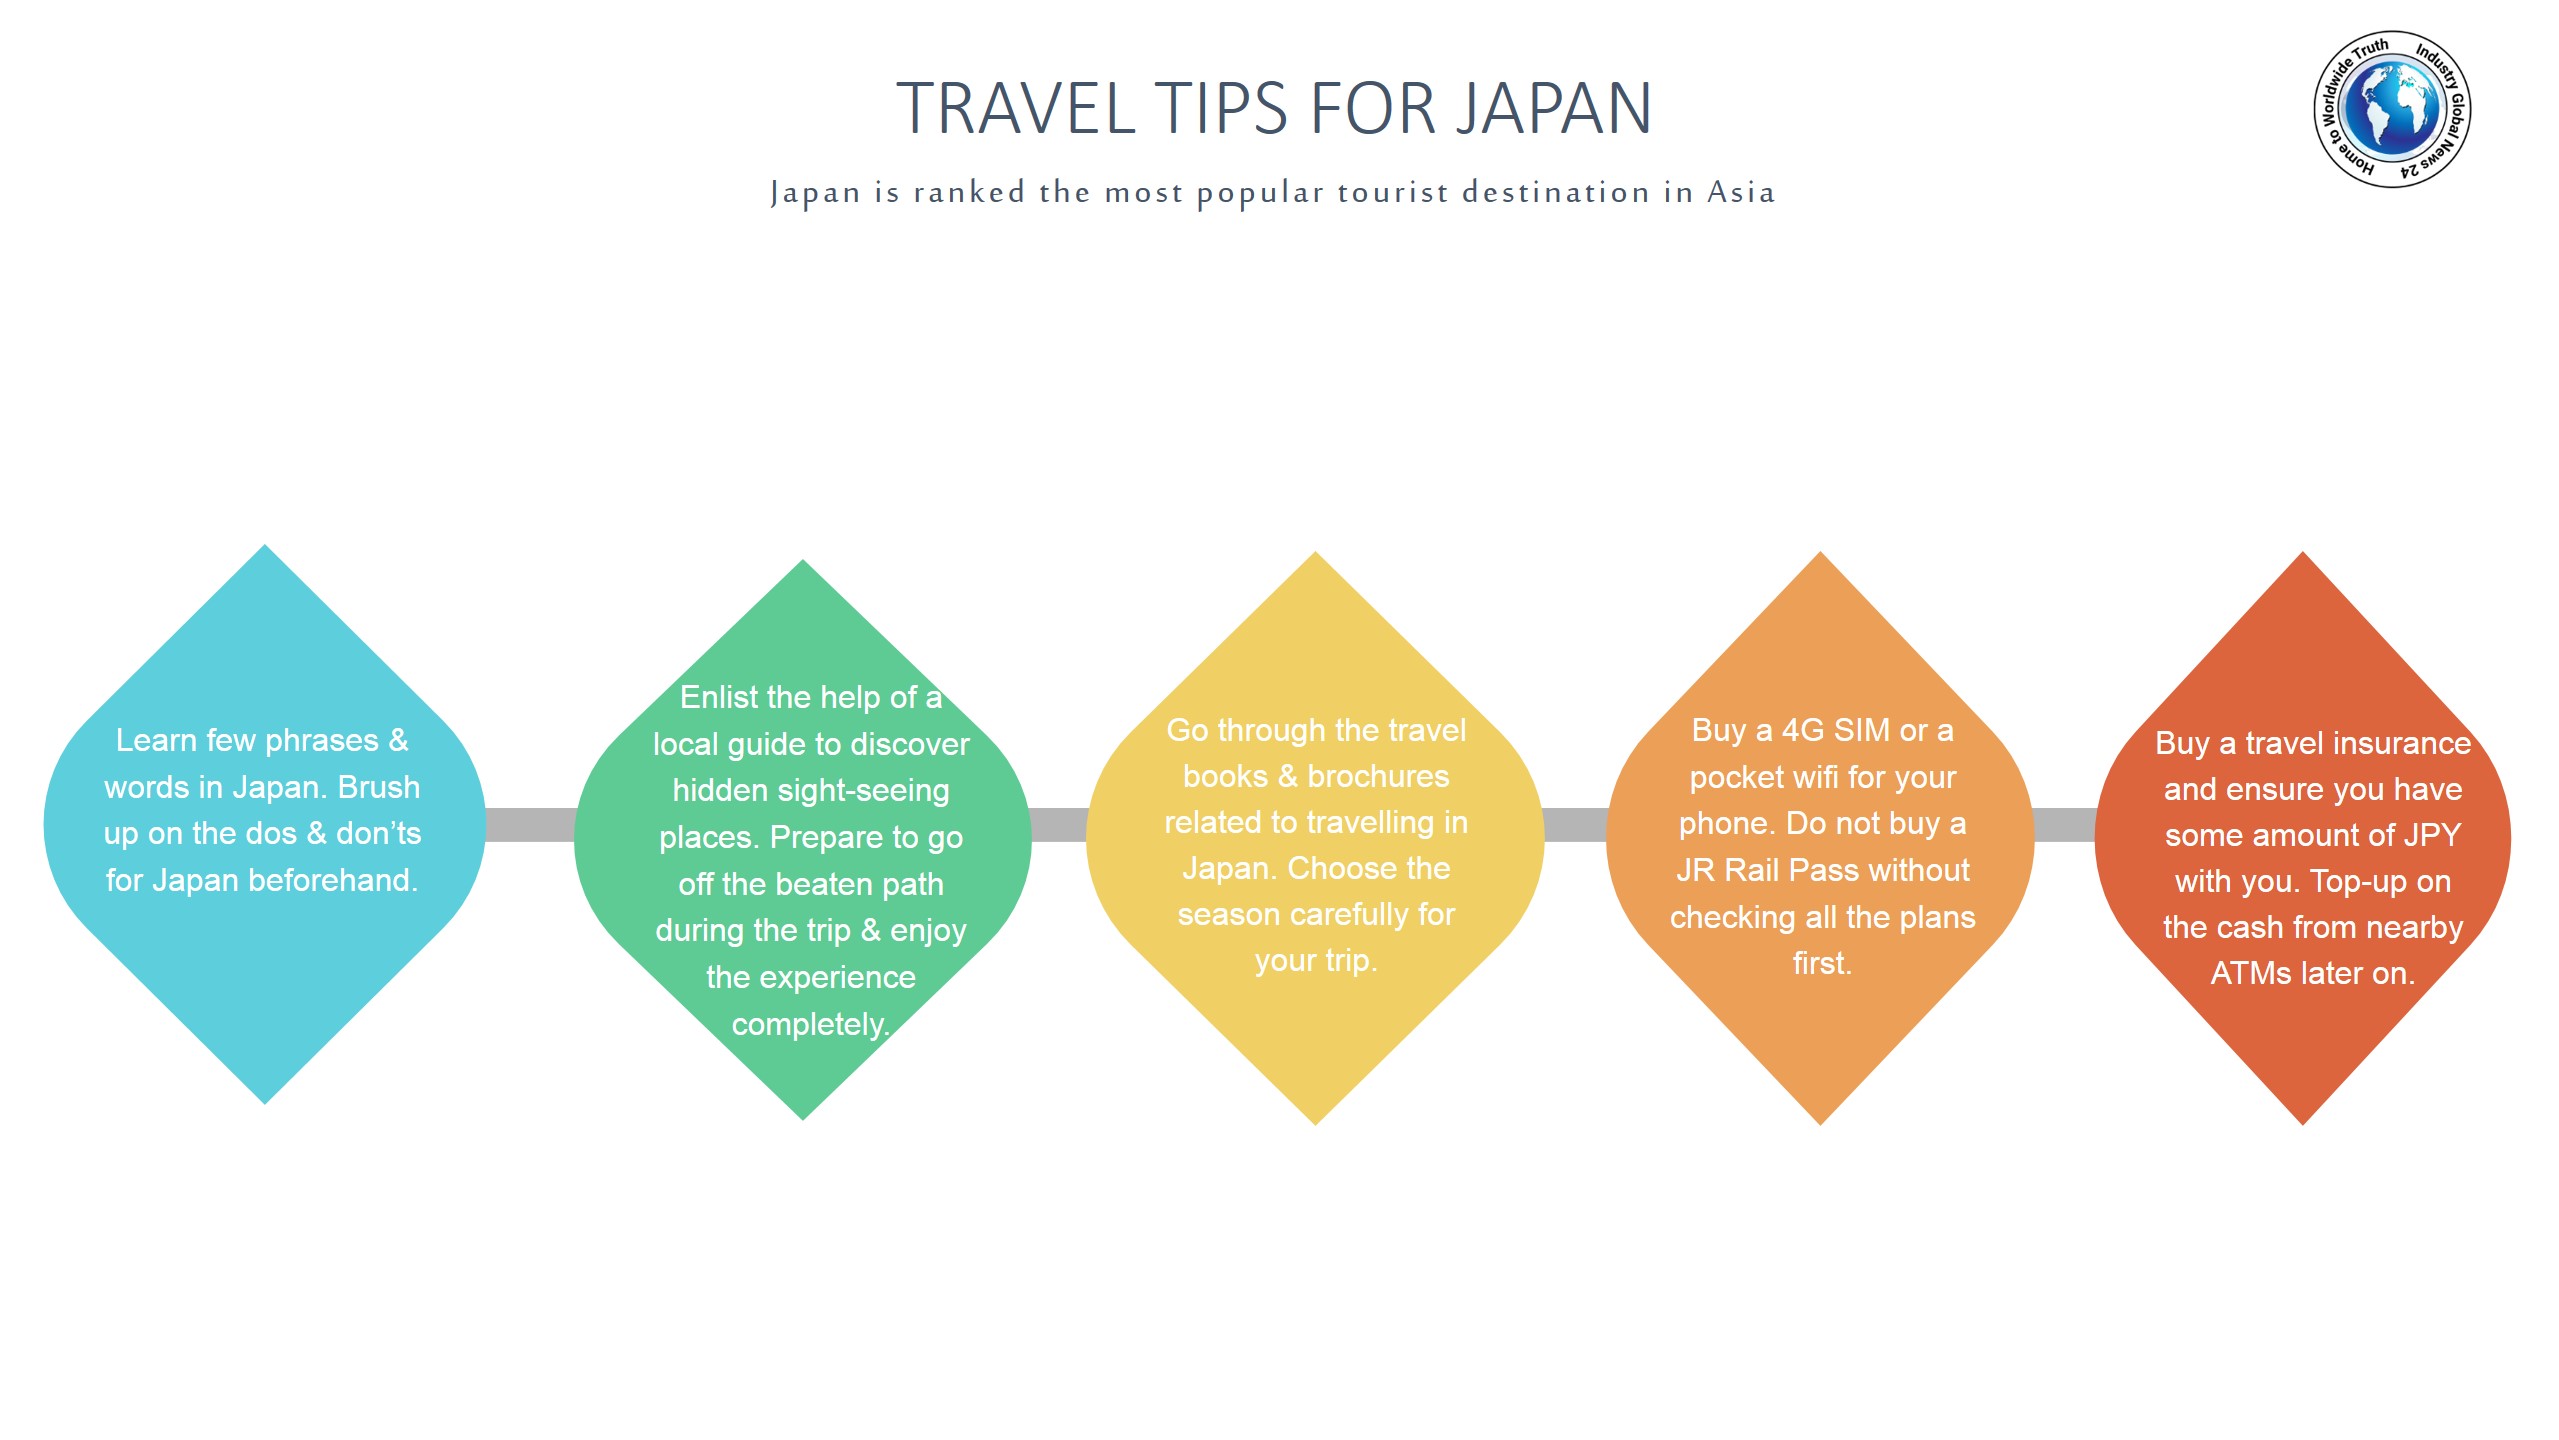 Travel tips for Japan